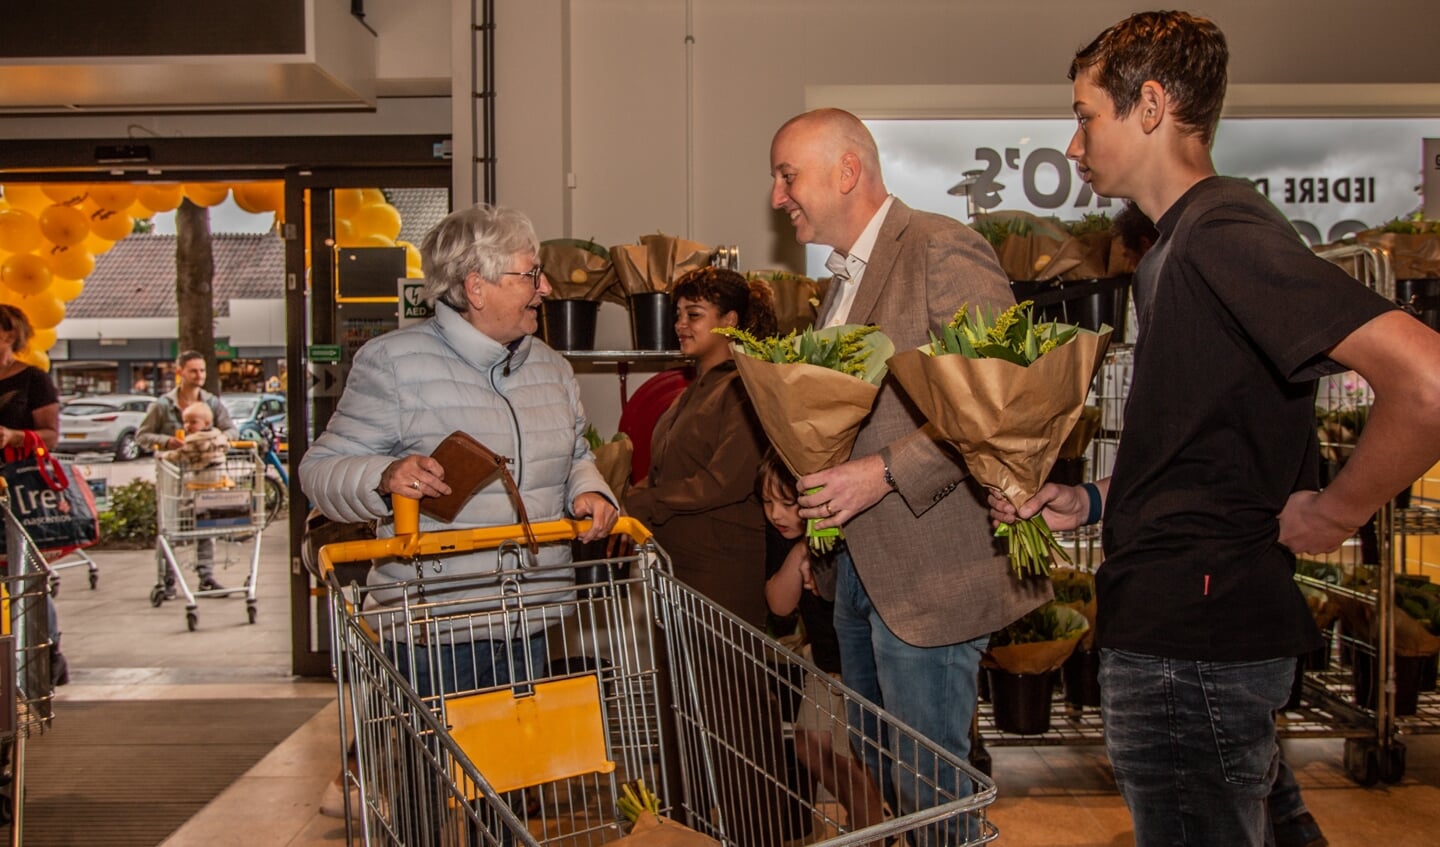 De familie Hollak deelt na de officiële opening bloemen uit aan klanten. Foto: Liesbeth Spaansen